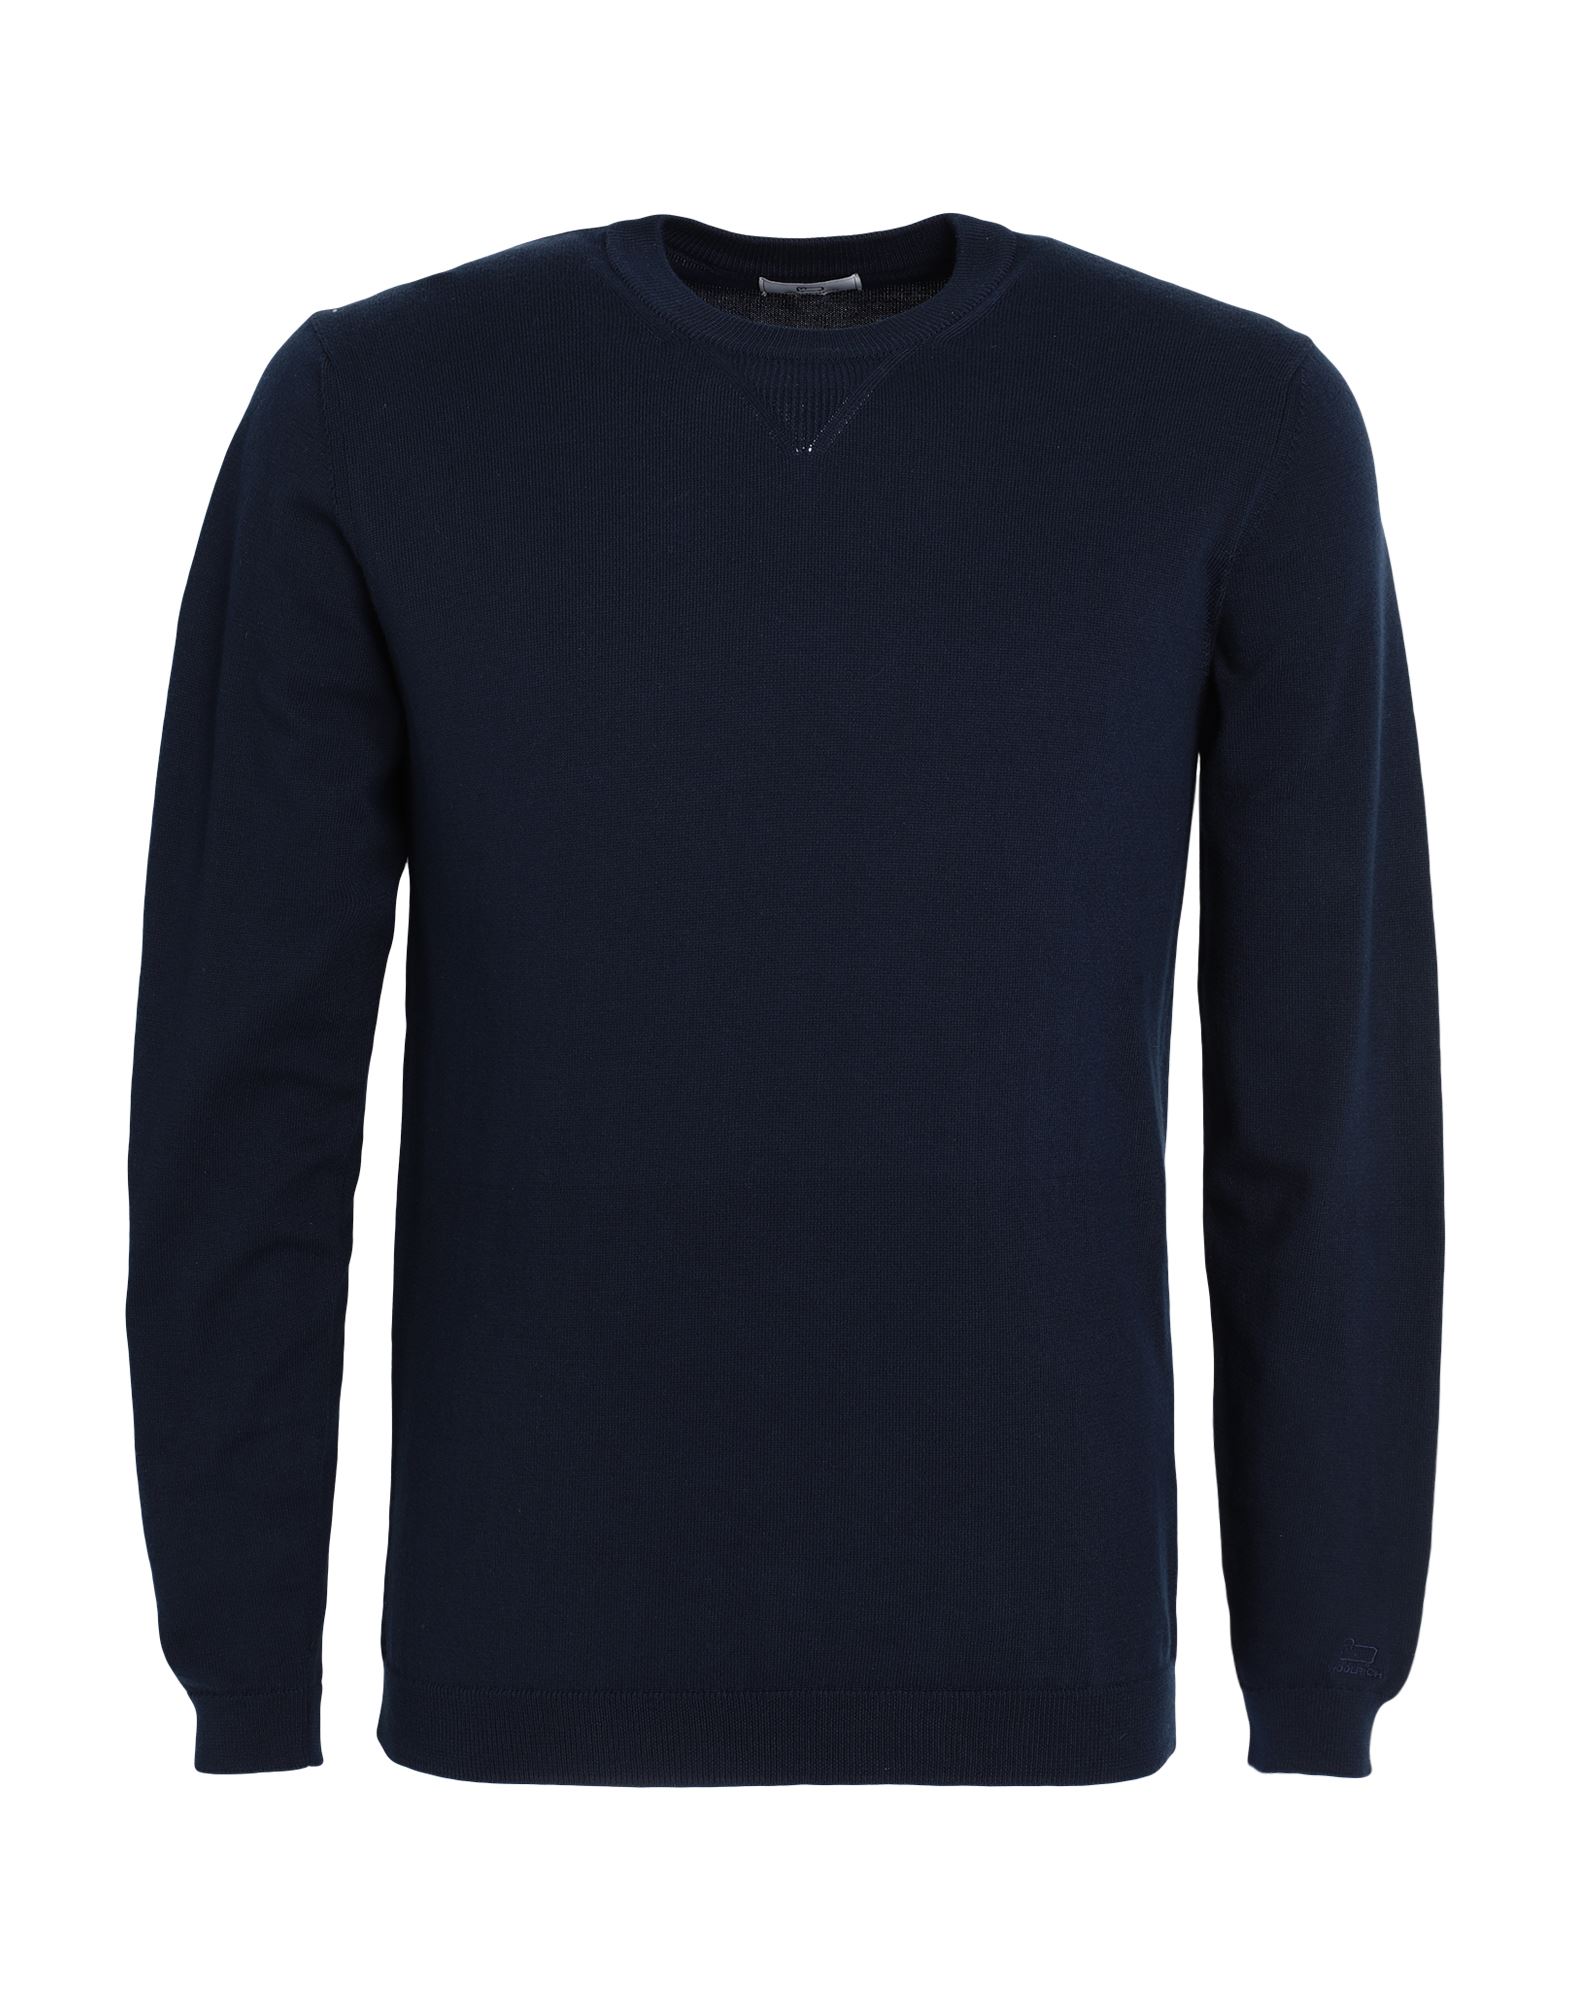 Woolrich Sweaters In Navy Blue